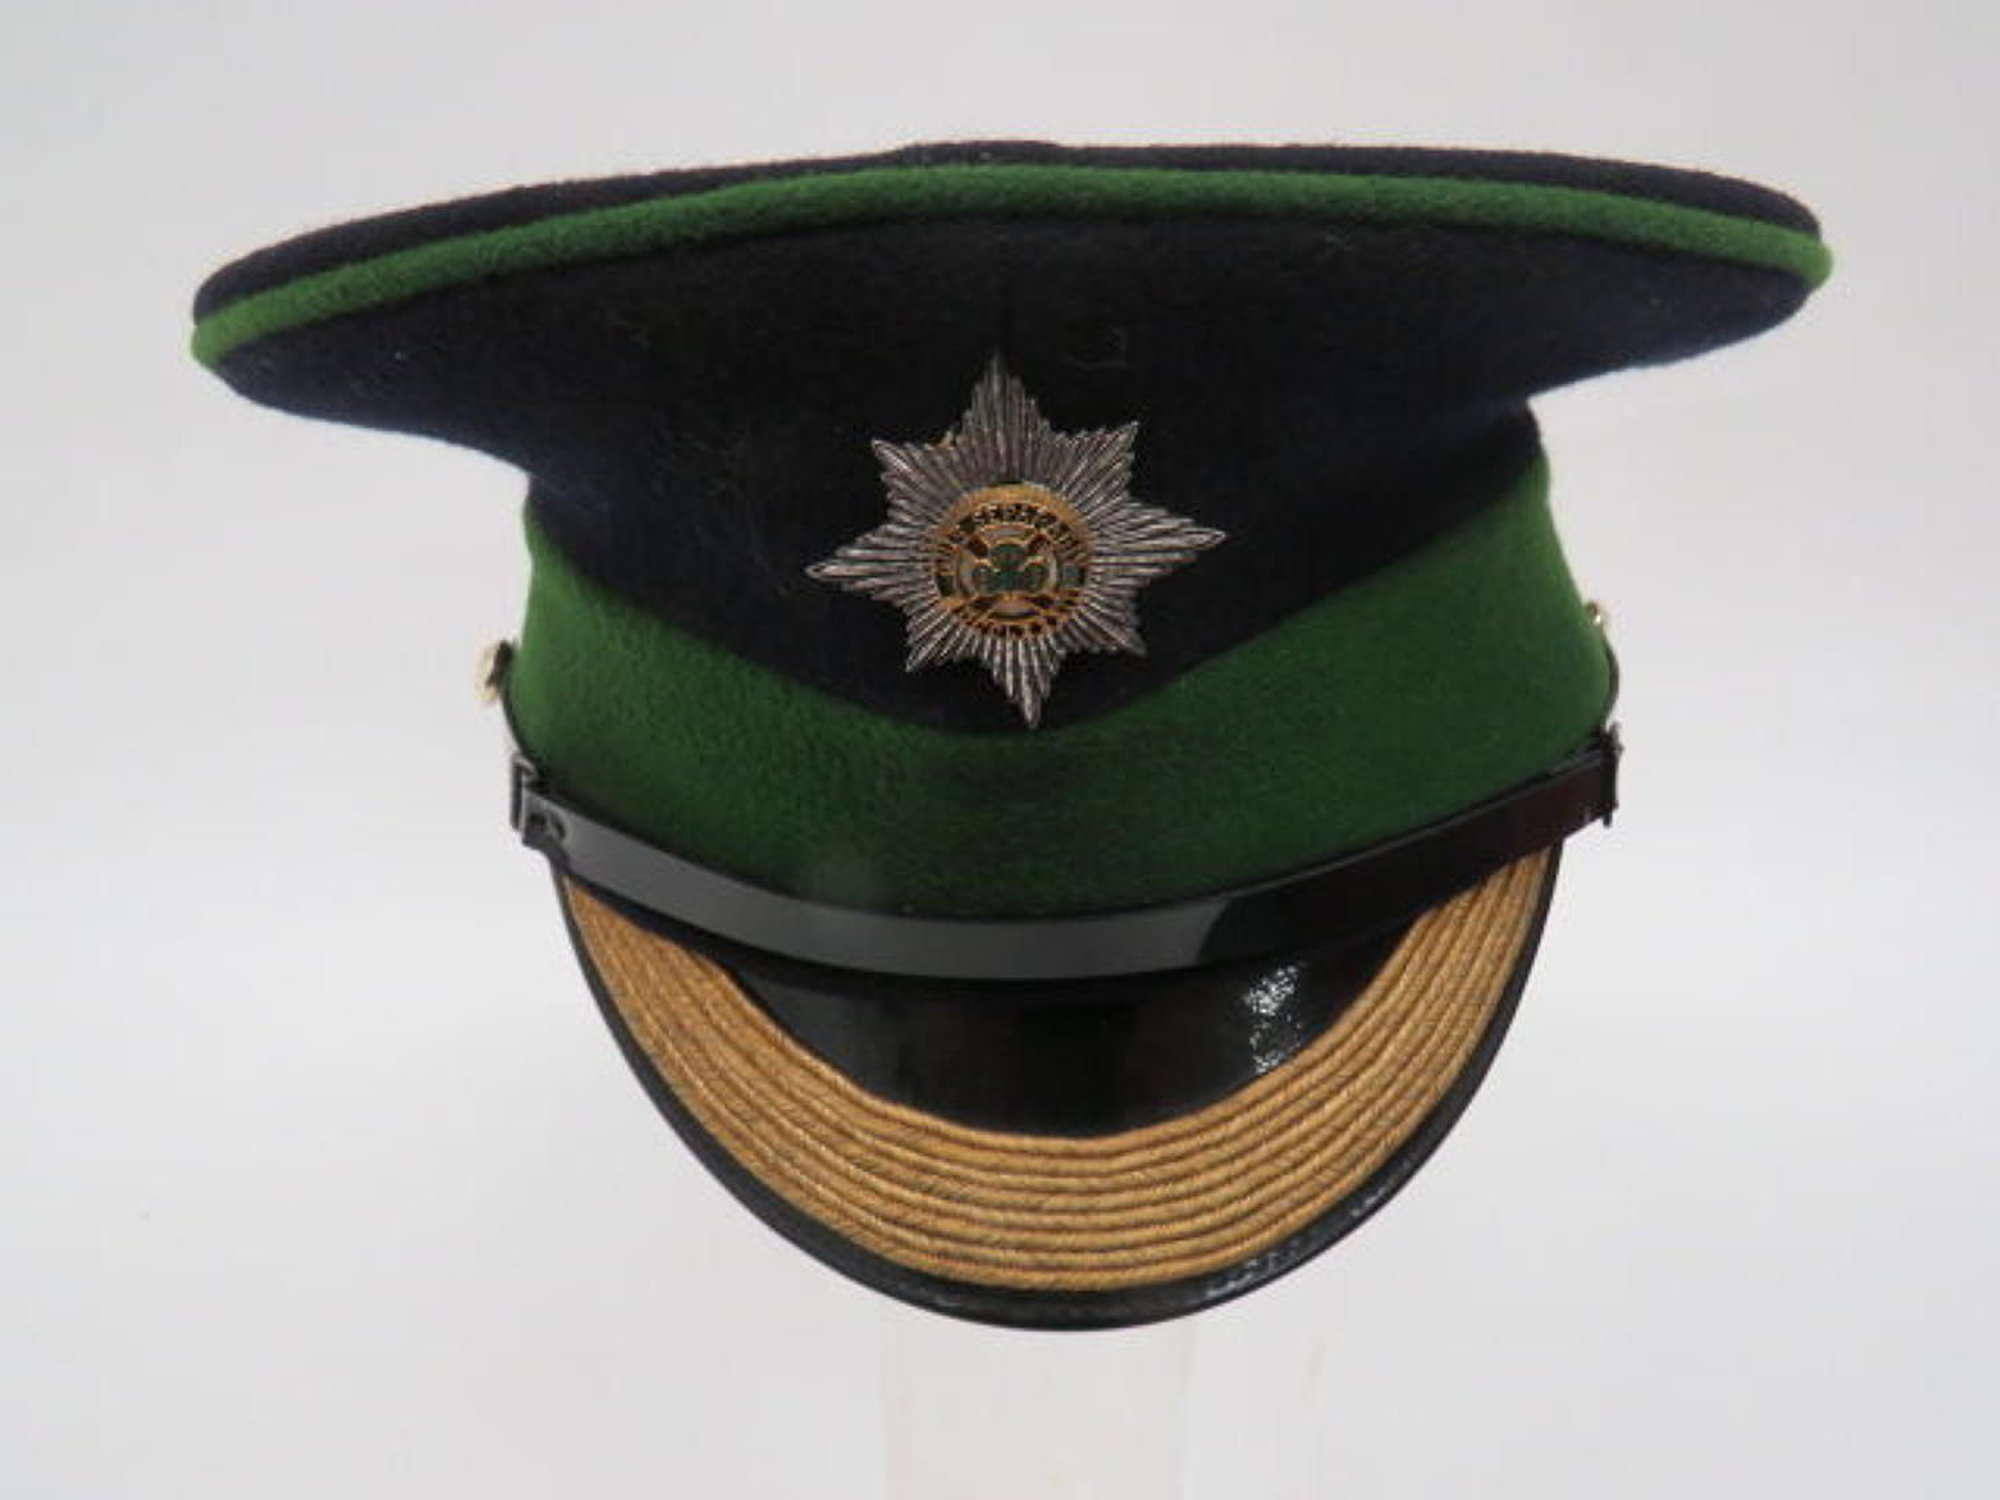 Current Issue Irish Guards Senior N.C.O's Dress Cap